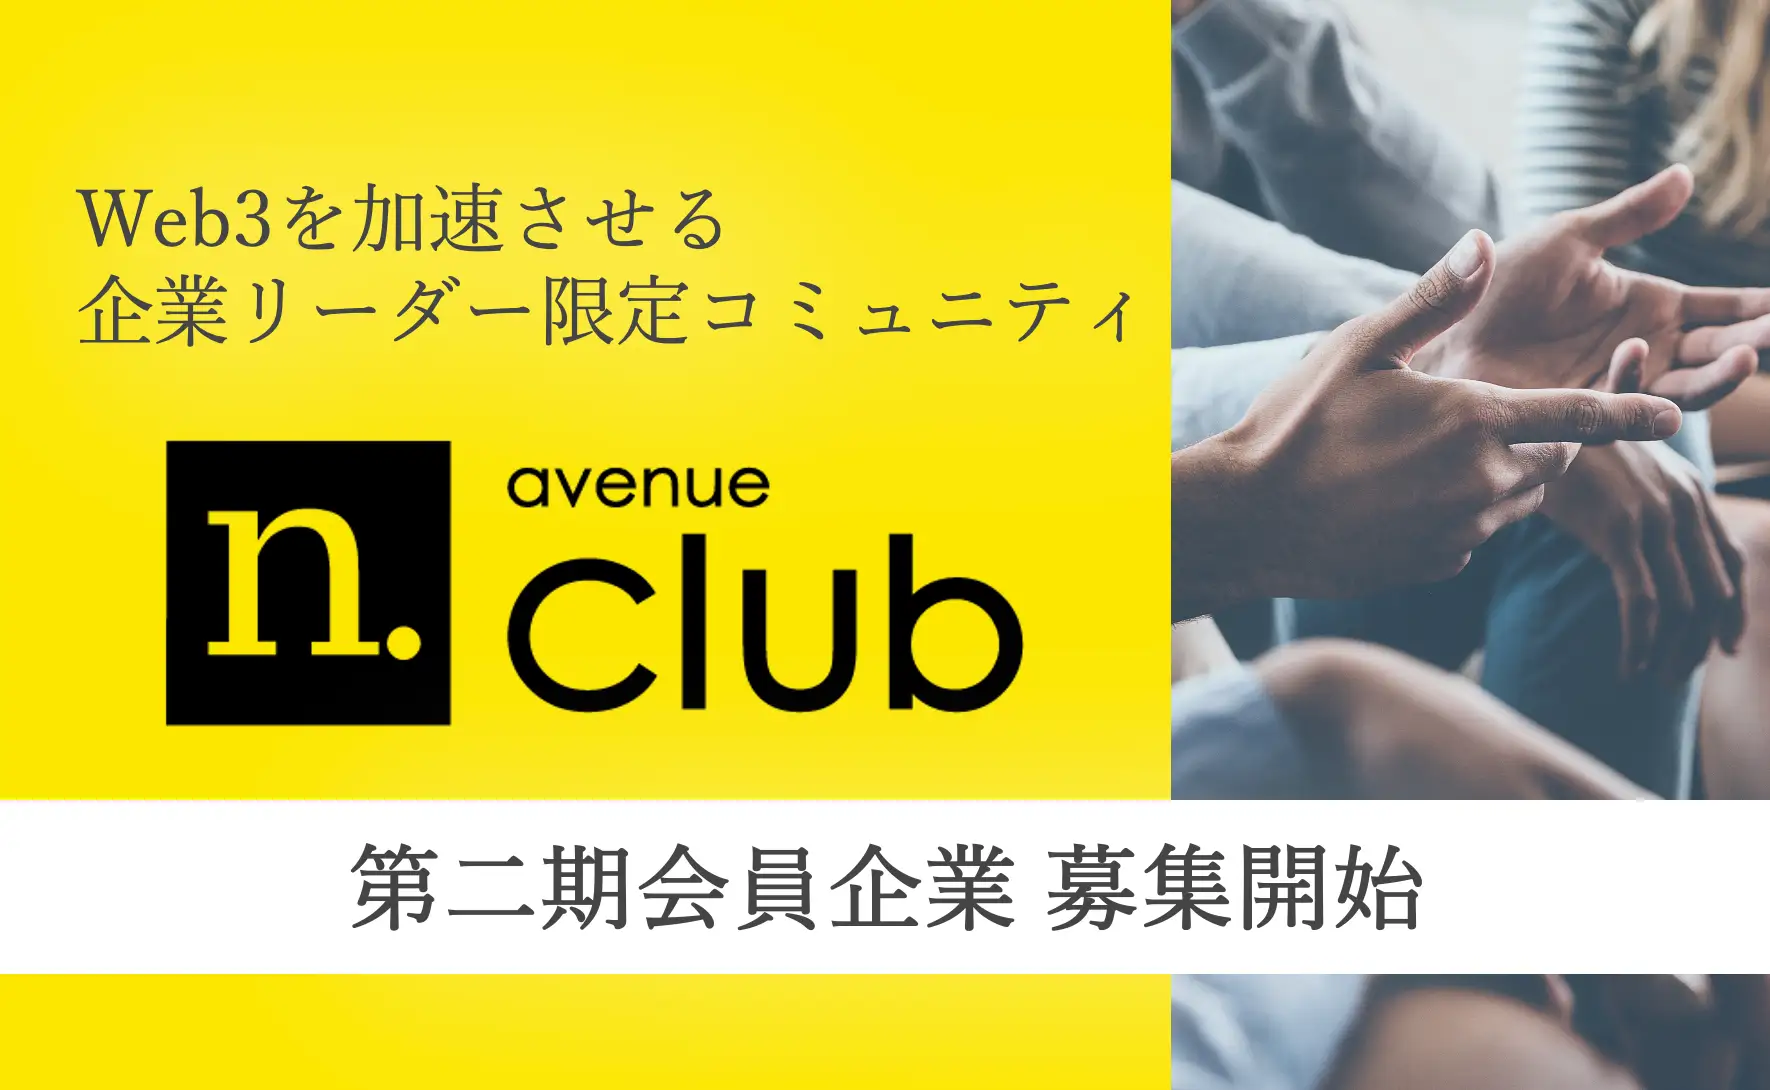 法人向けWeb3コミュニティサービスの進化 - N.Avenue club